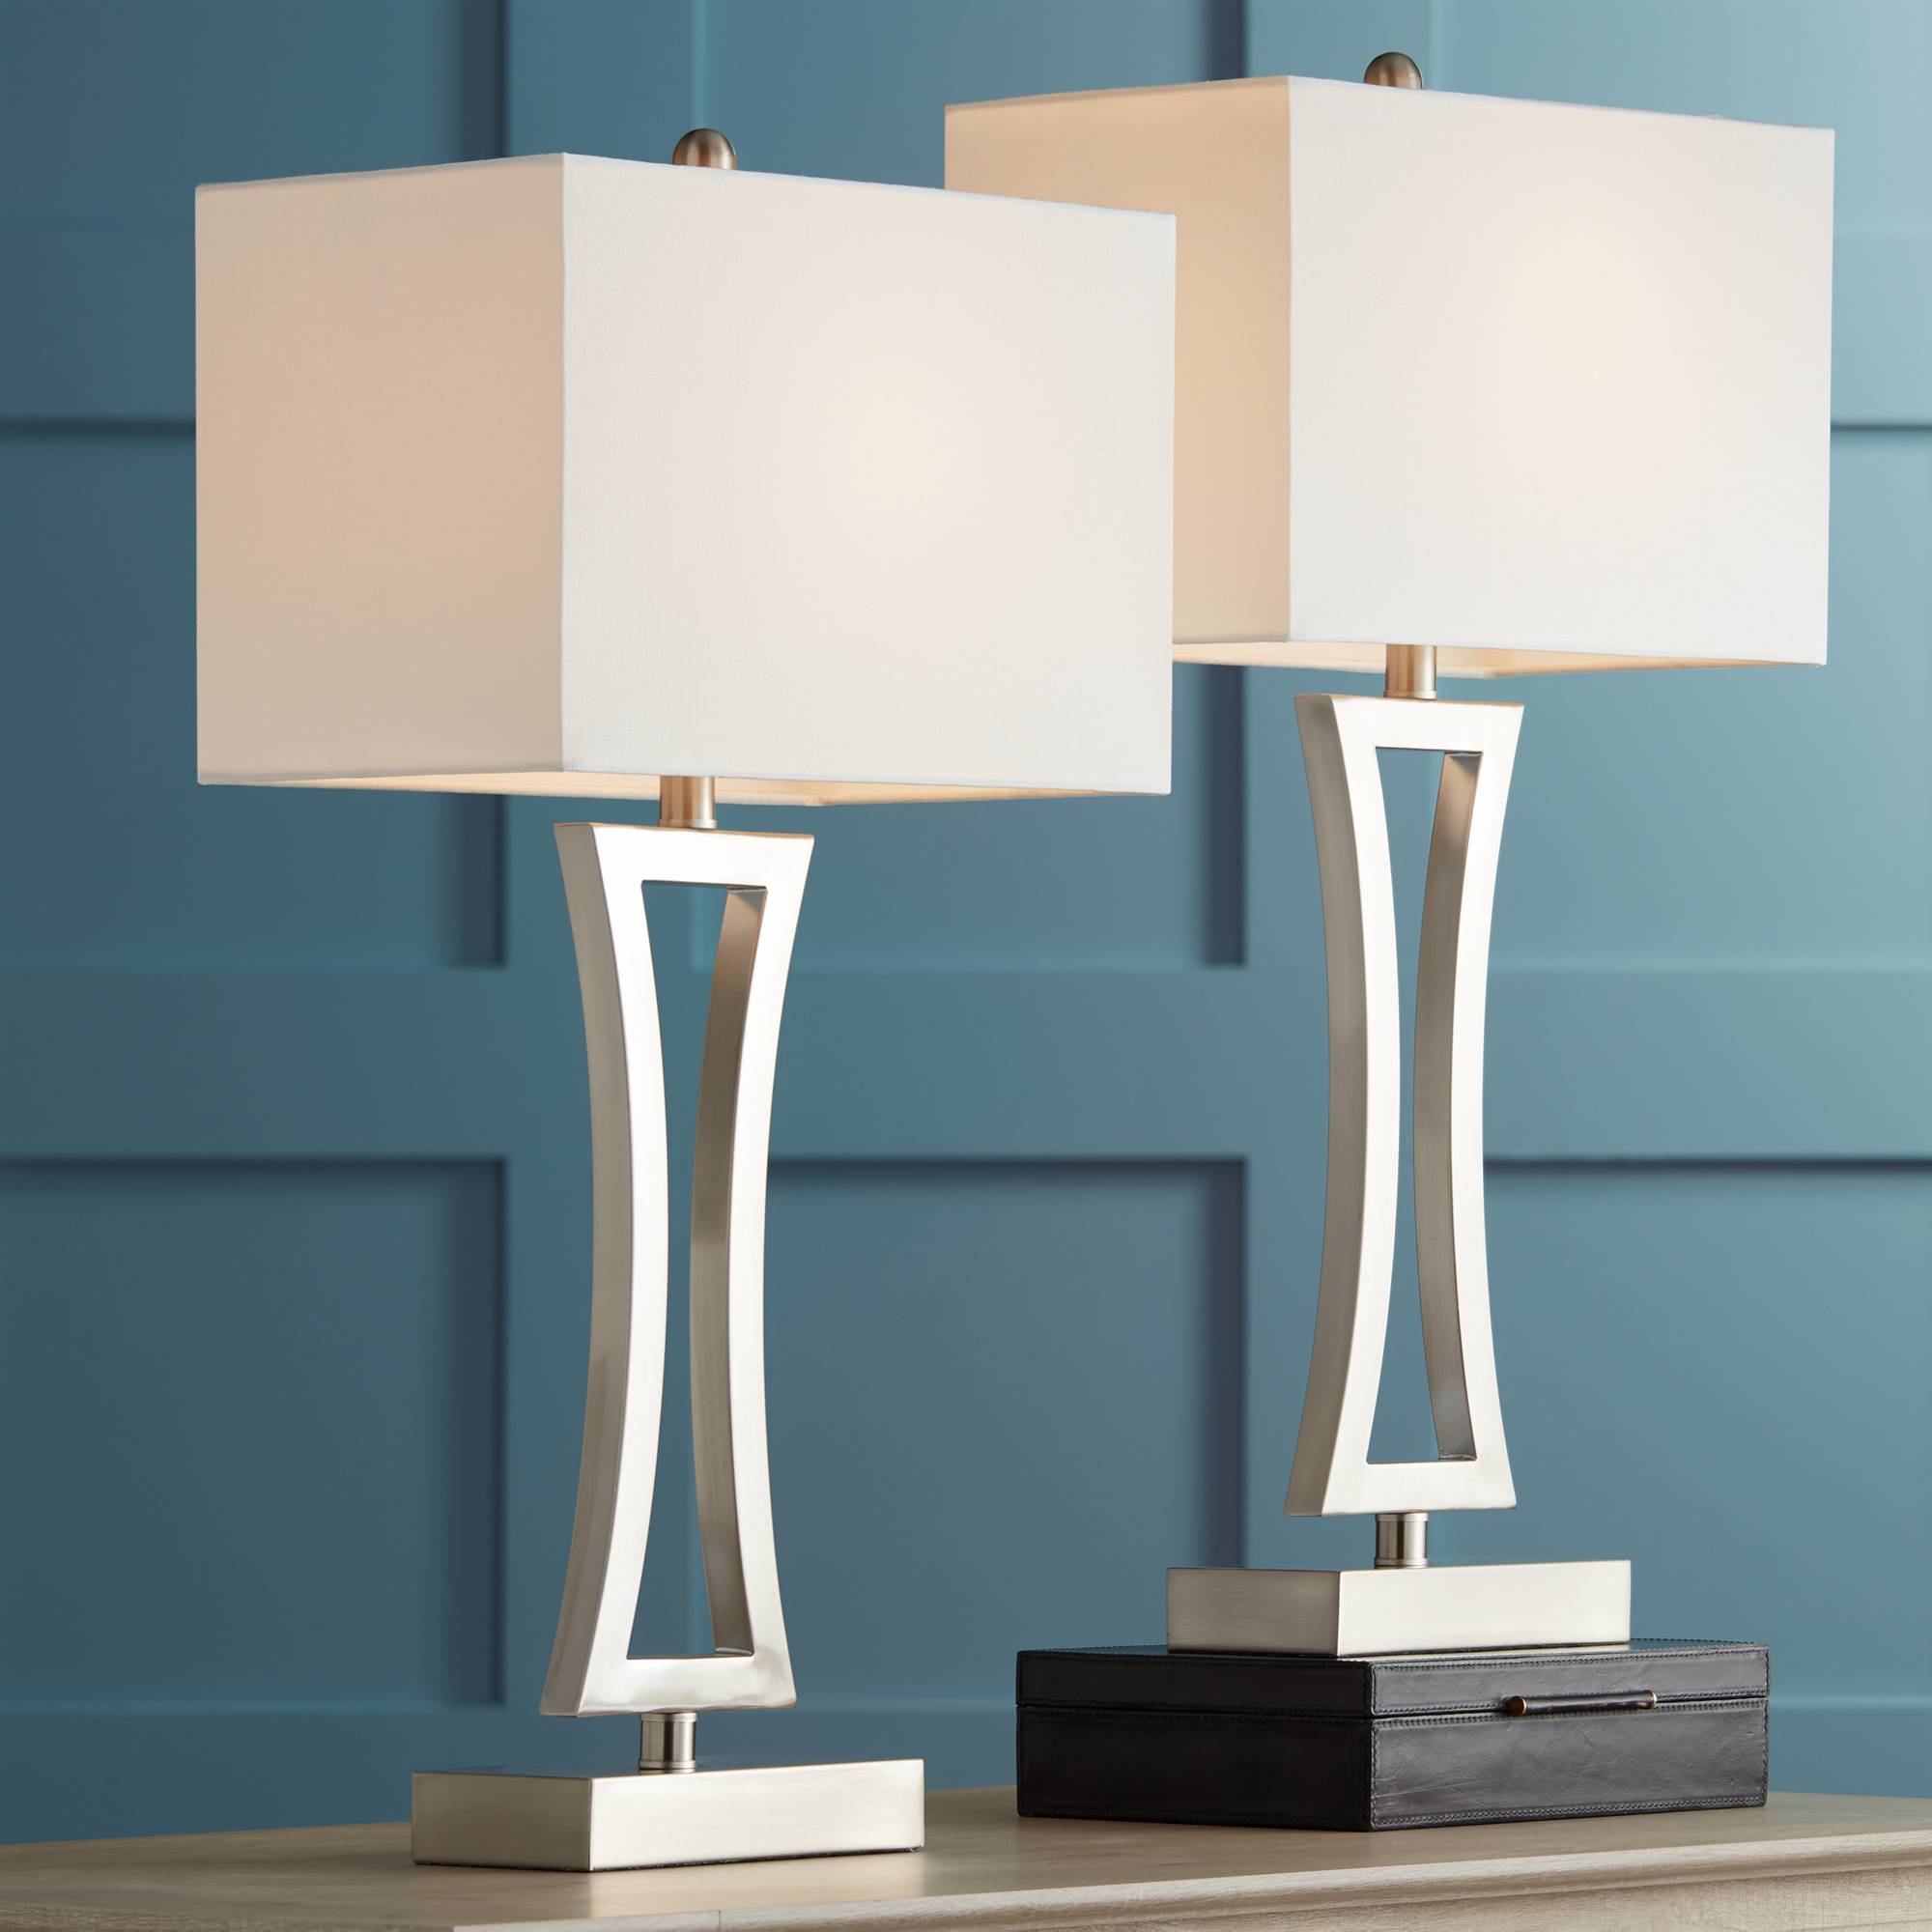 Modern Table Lamps Set Of 2 Brushed Steel For Living Room Family Bedroom Bedside 736101859642 EBay